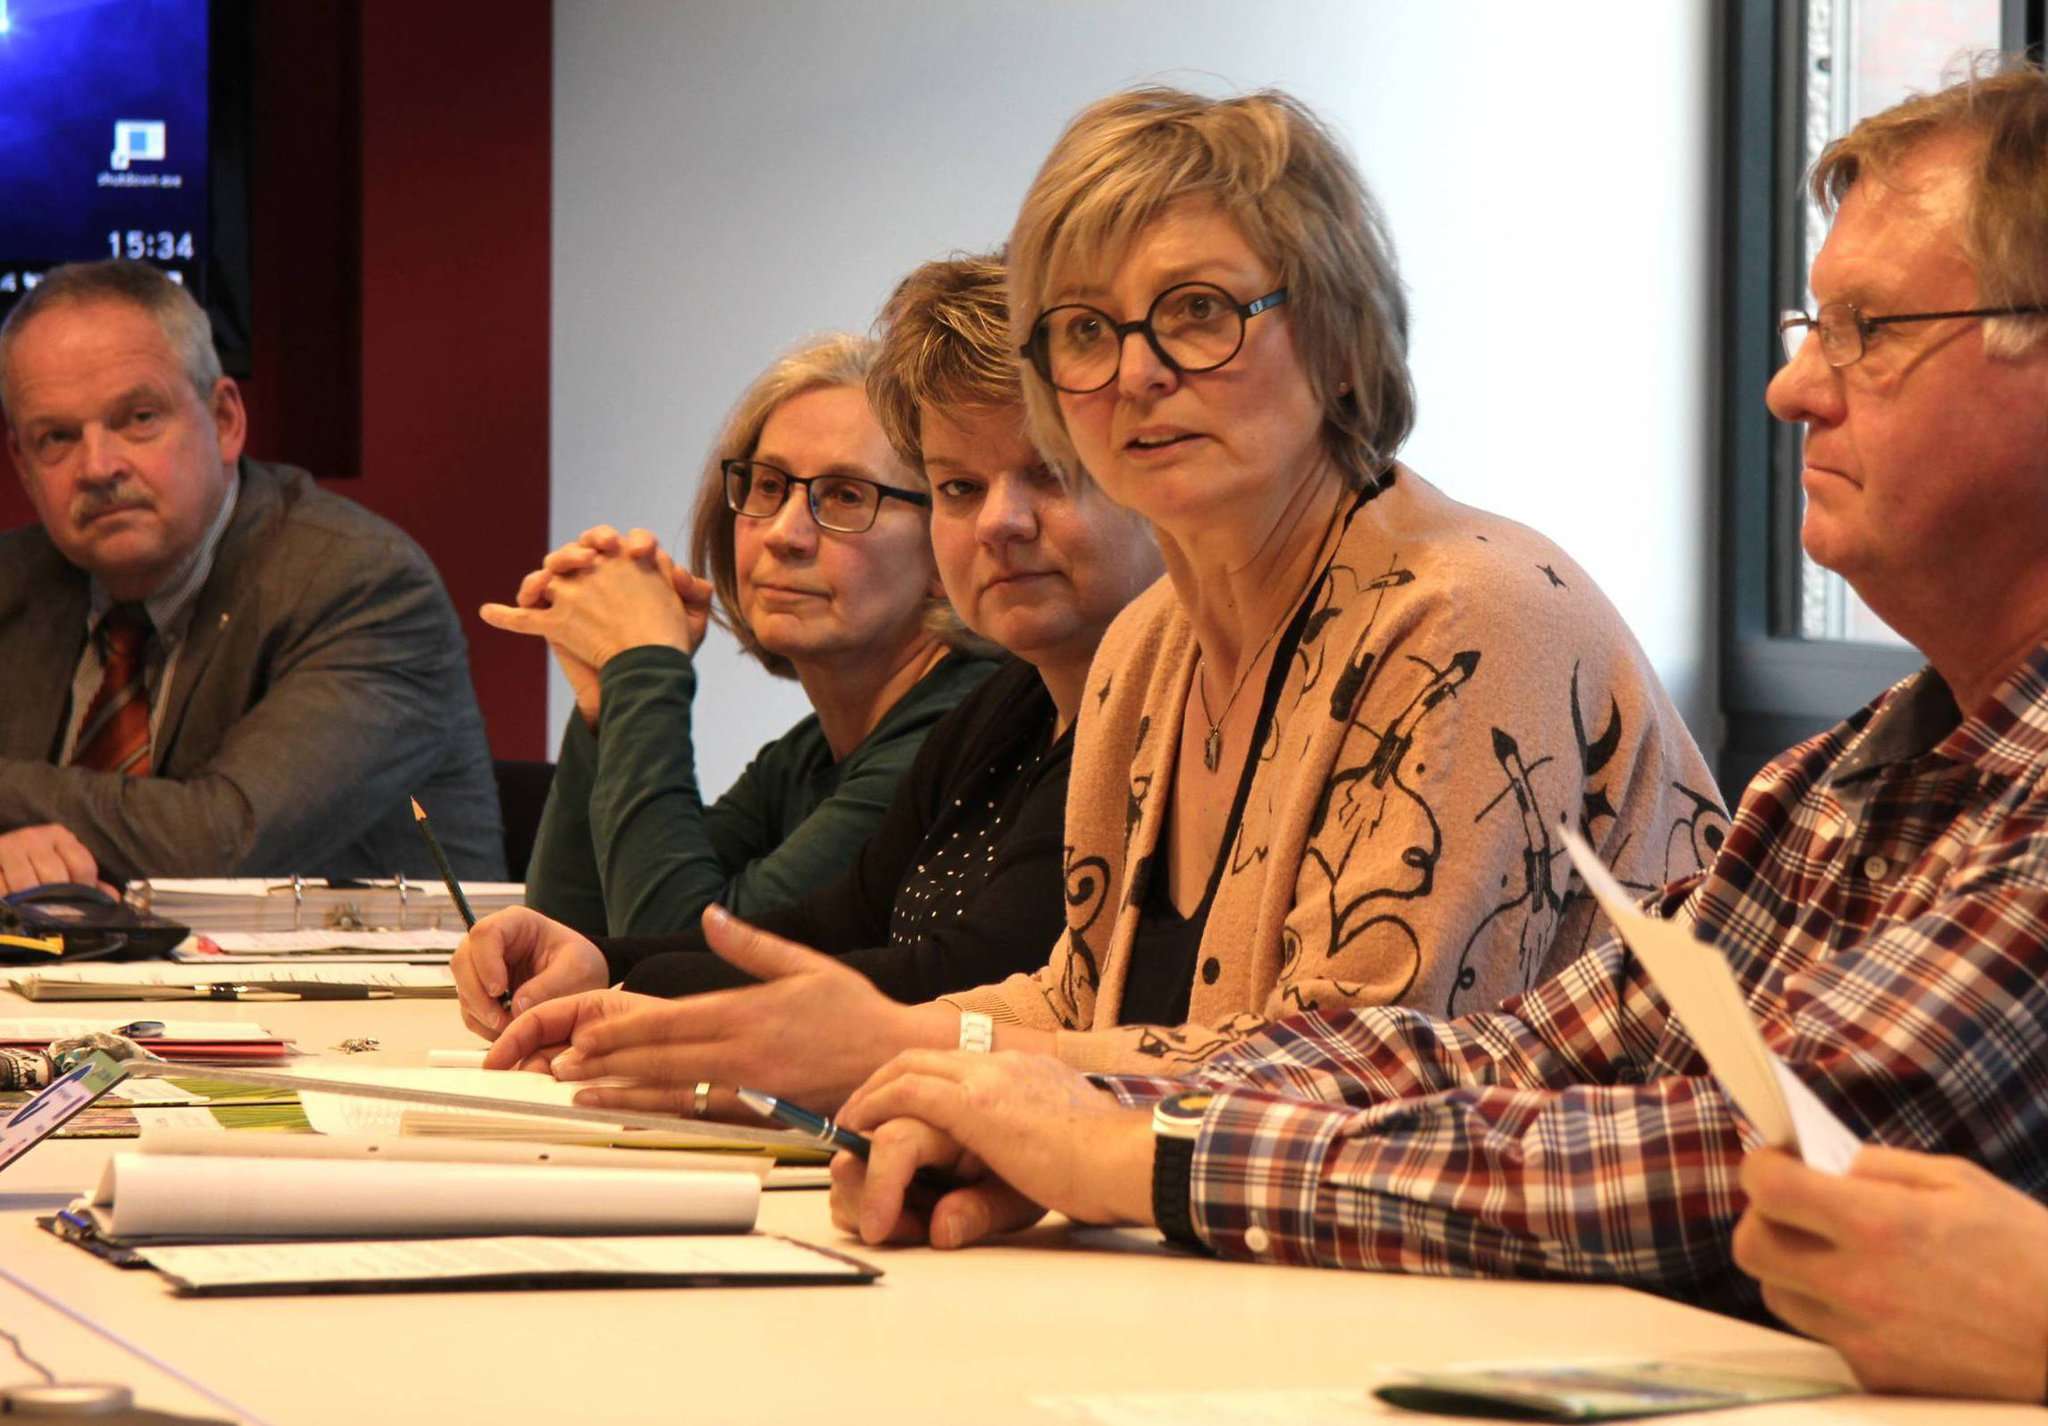 Helga Straube (Mitte) wies die Kritikpunkte von Manfred Radtke entschieden zurück. Unterstützung bekam sie dabei von Andreas Weber (links). Foto: Nina Baucke